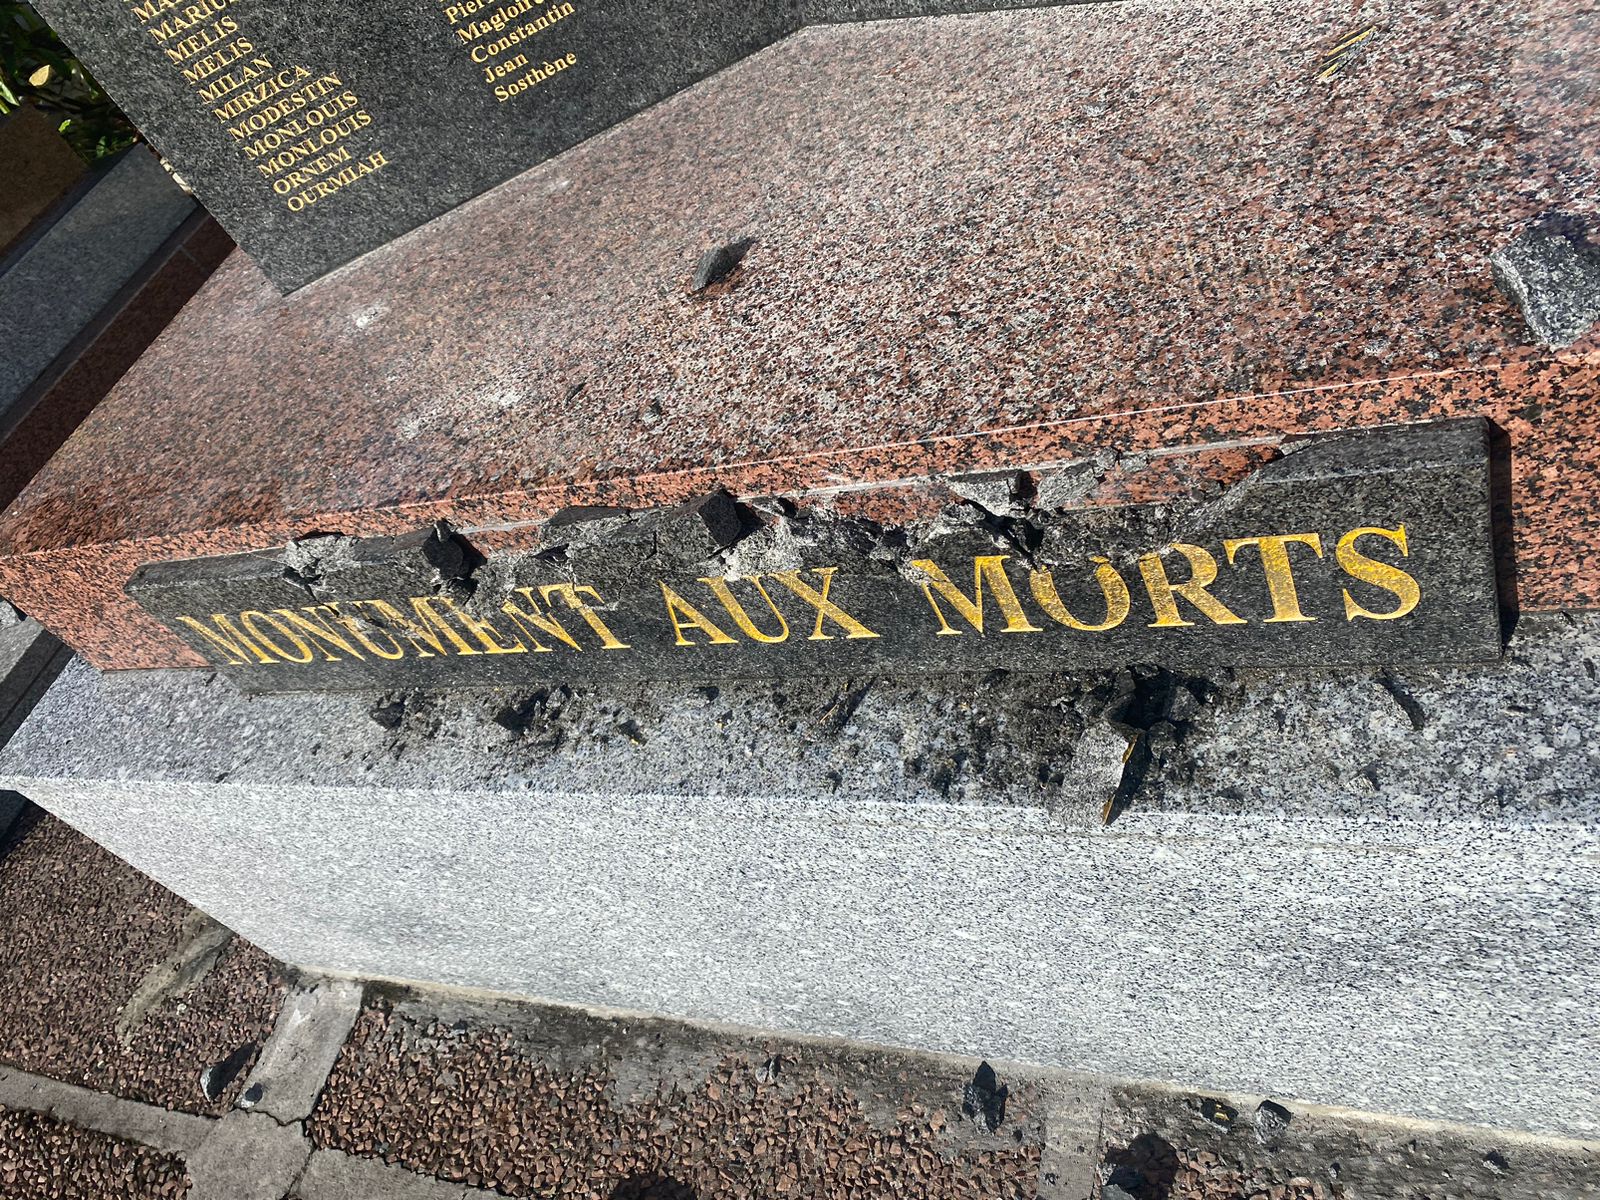     Inauguré en 2021, le monument aux morts de Rivière-Pilote a été vandalisé

